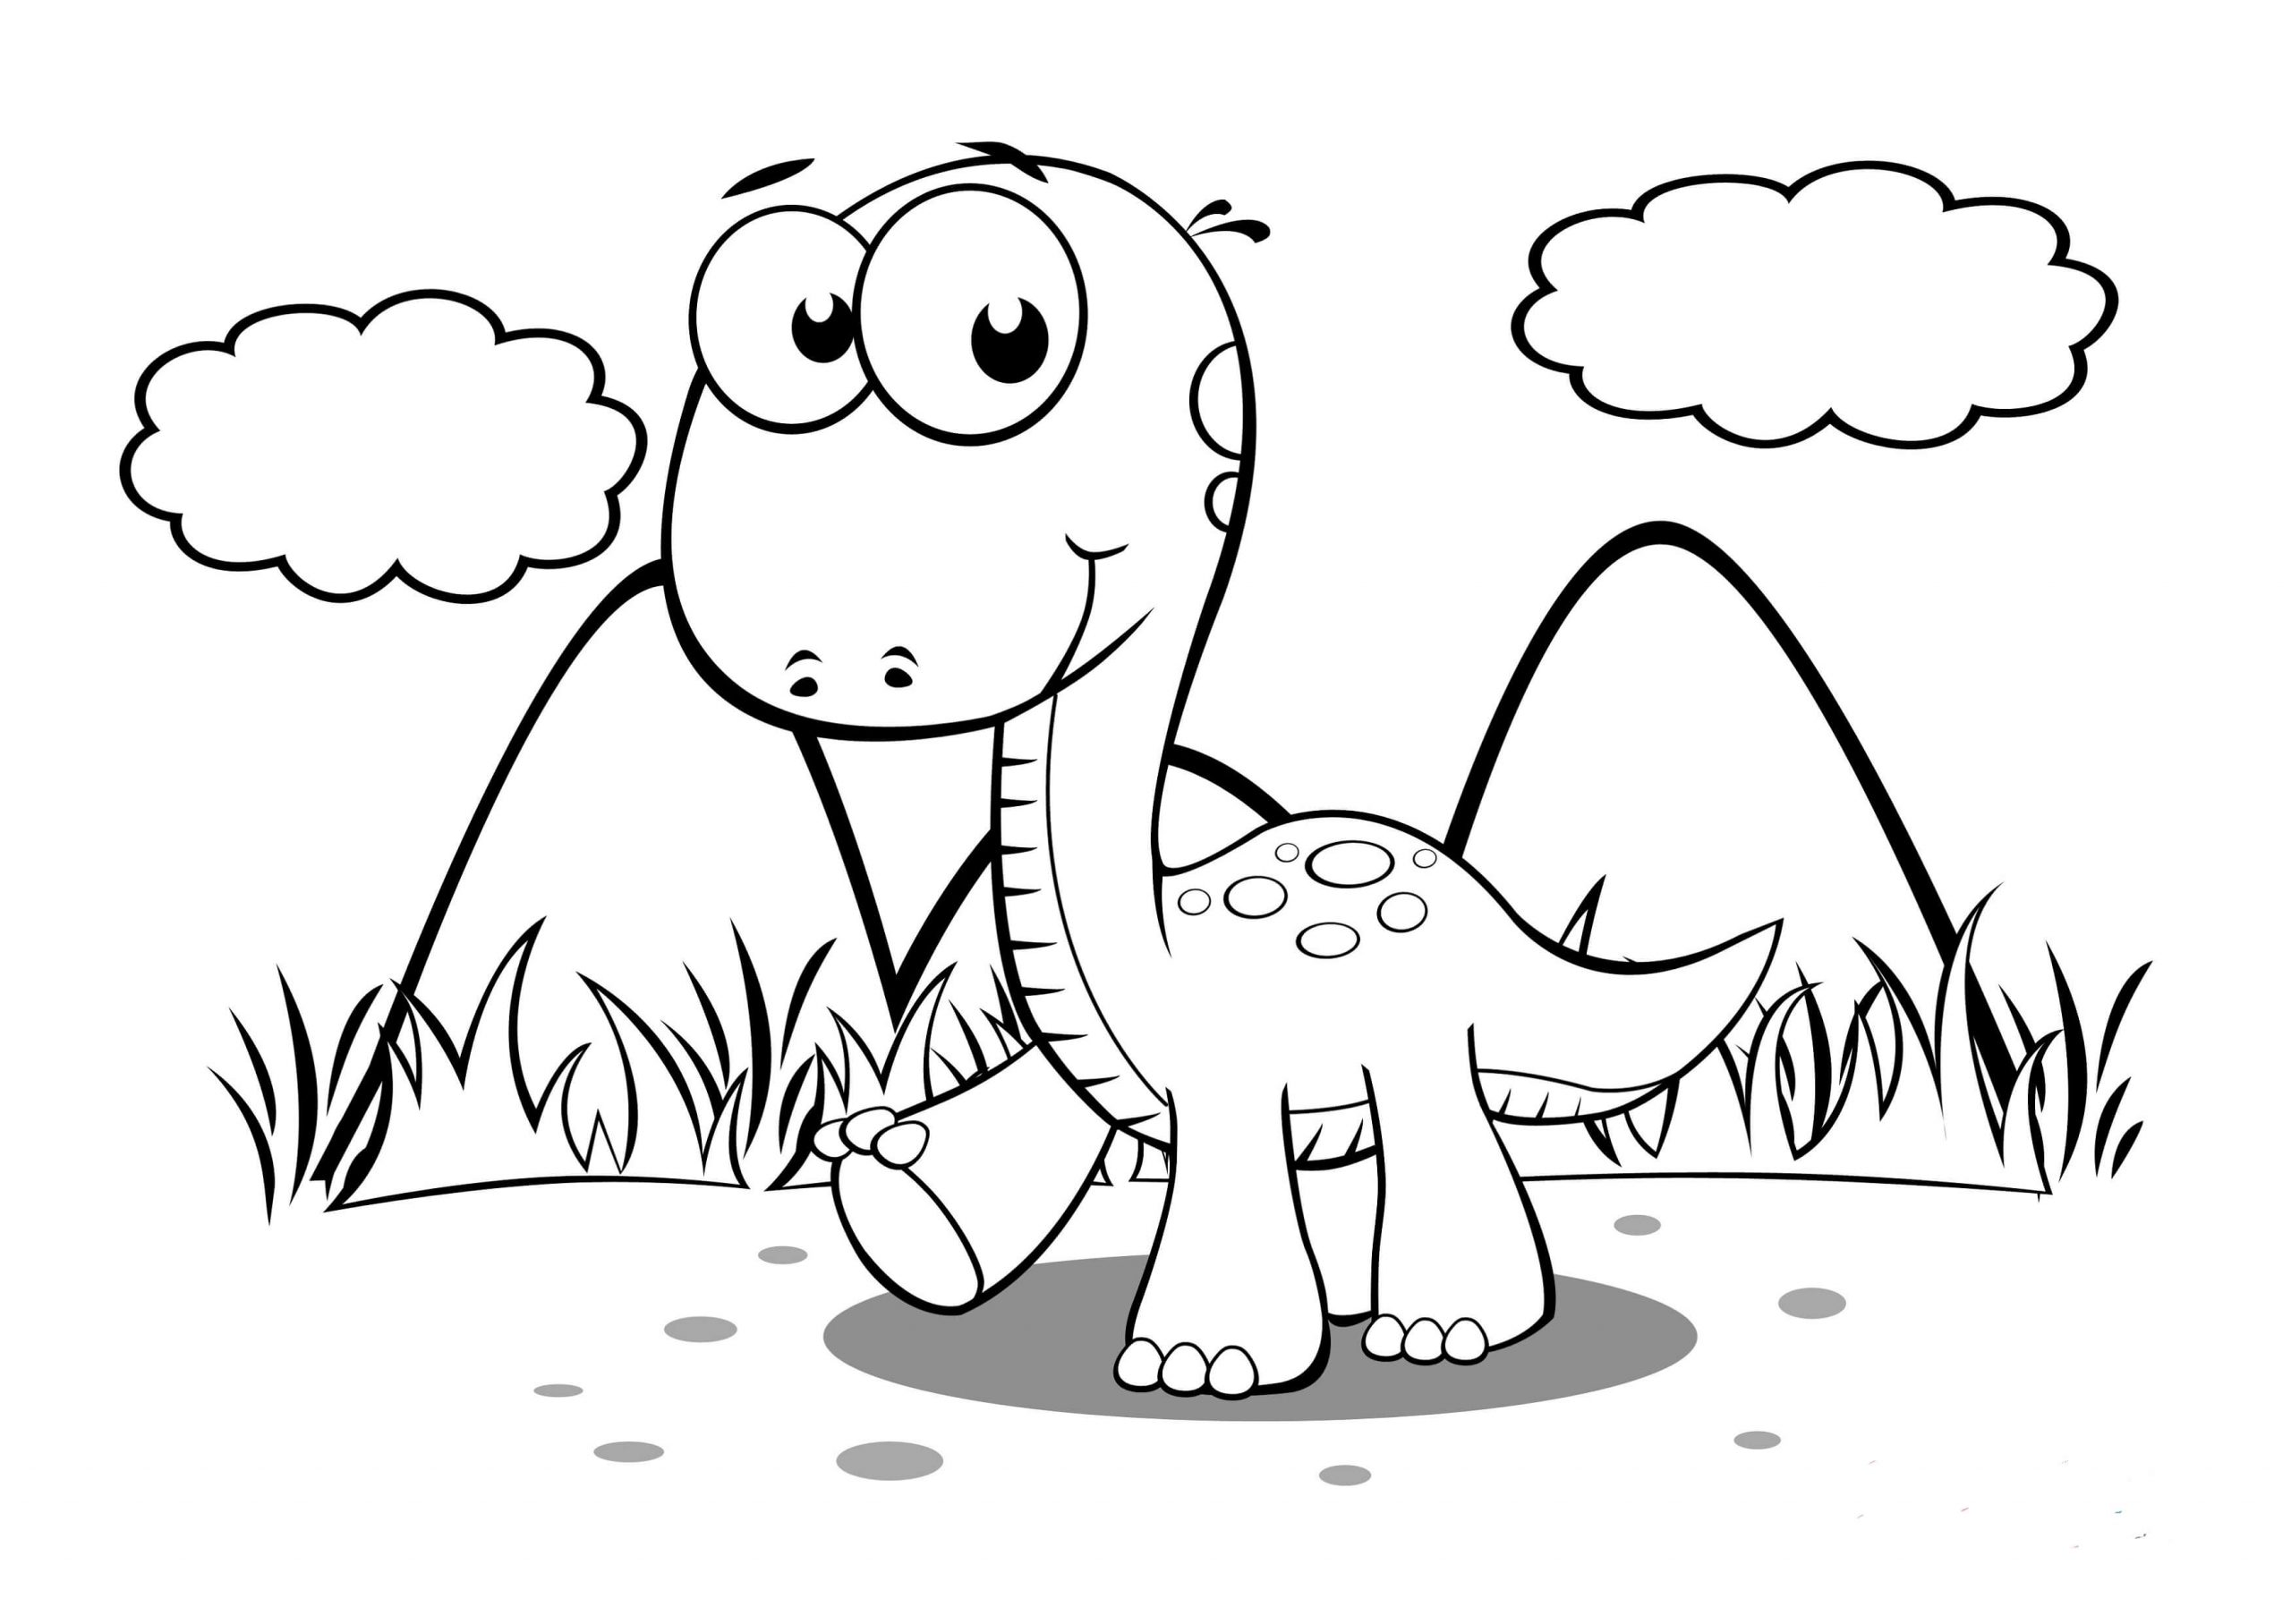 Baby dinosaurus met lange nek lopen